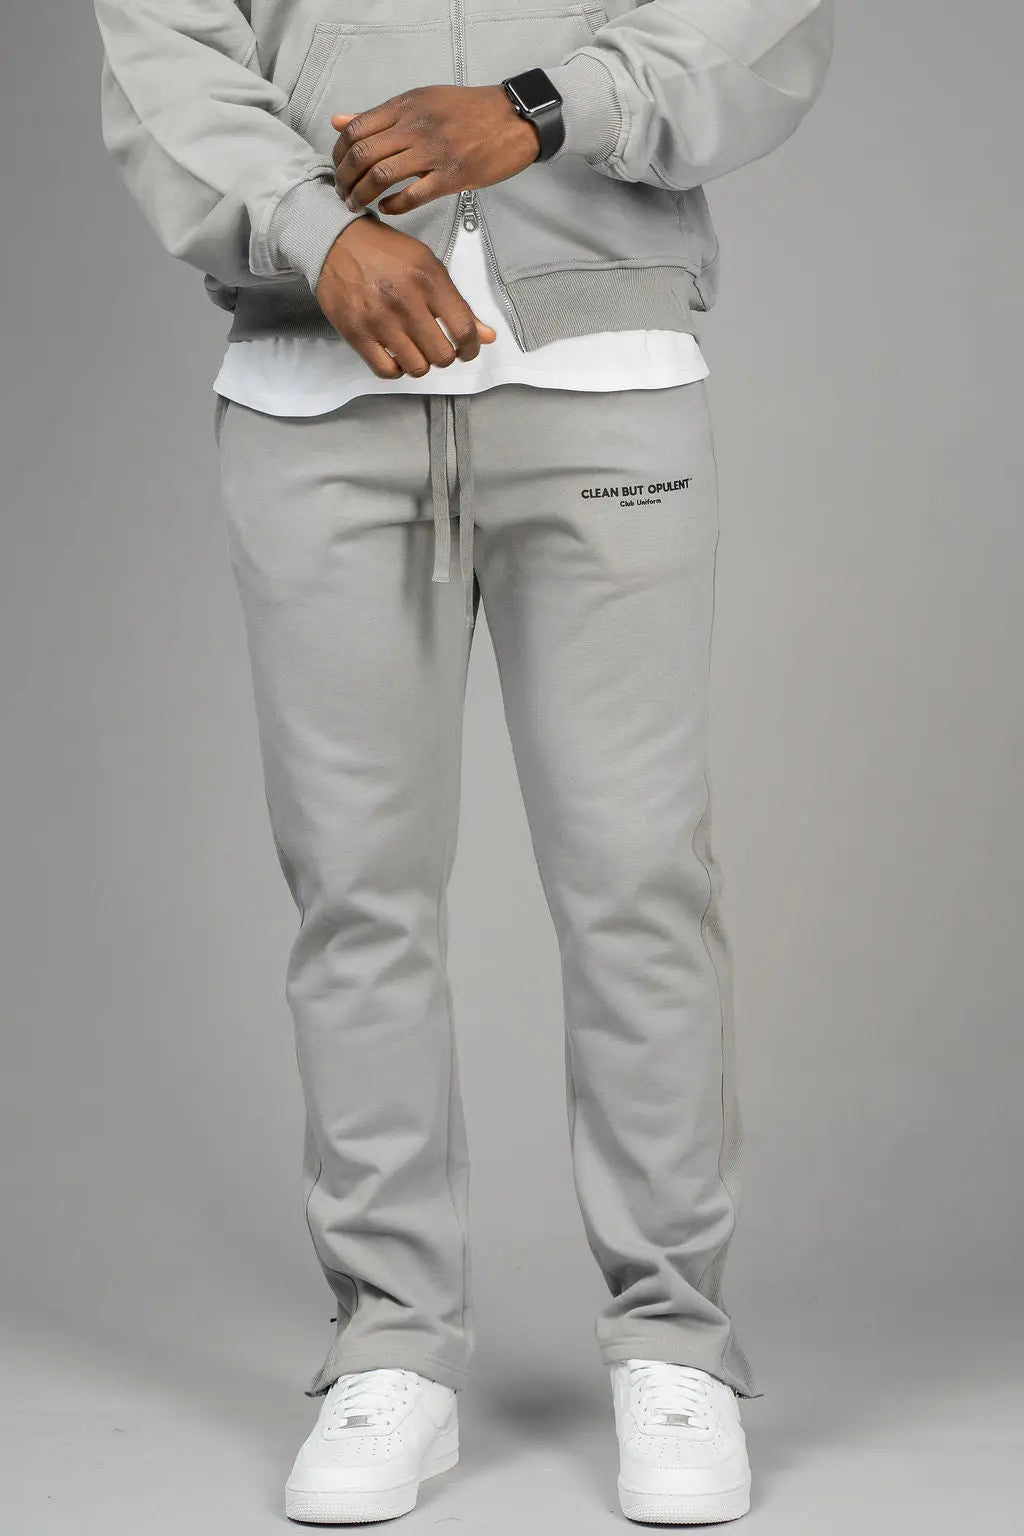 Club Uniform Pants - Grey Opulent Apparel